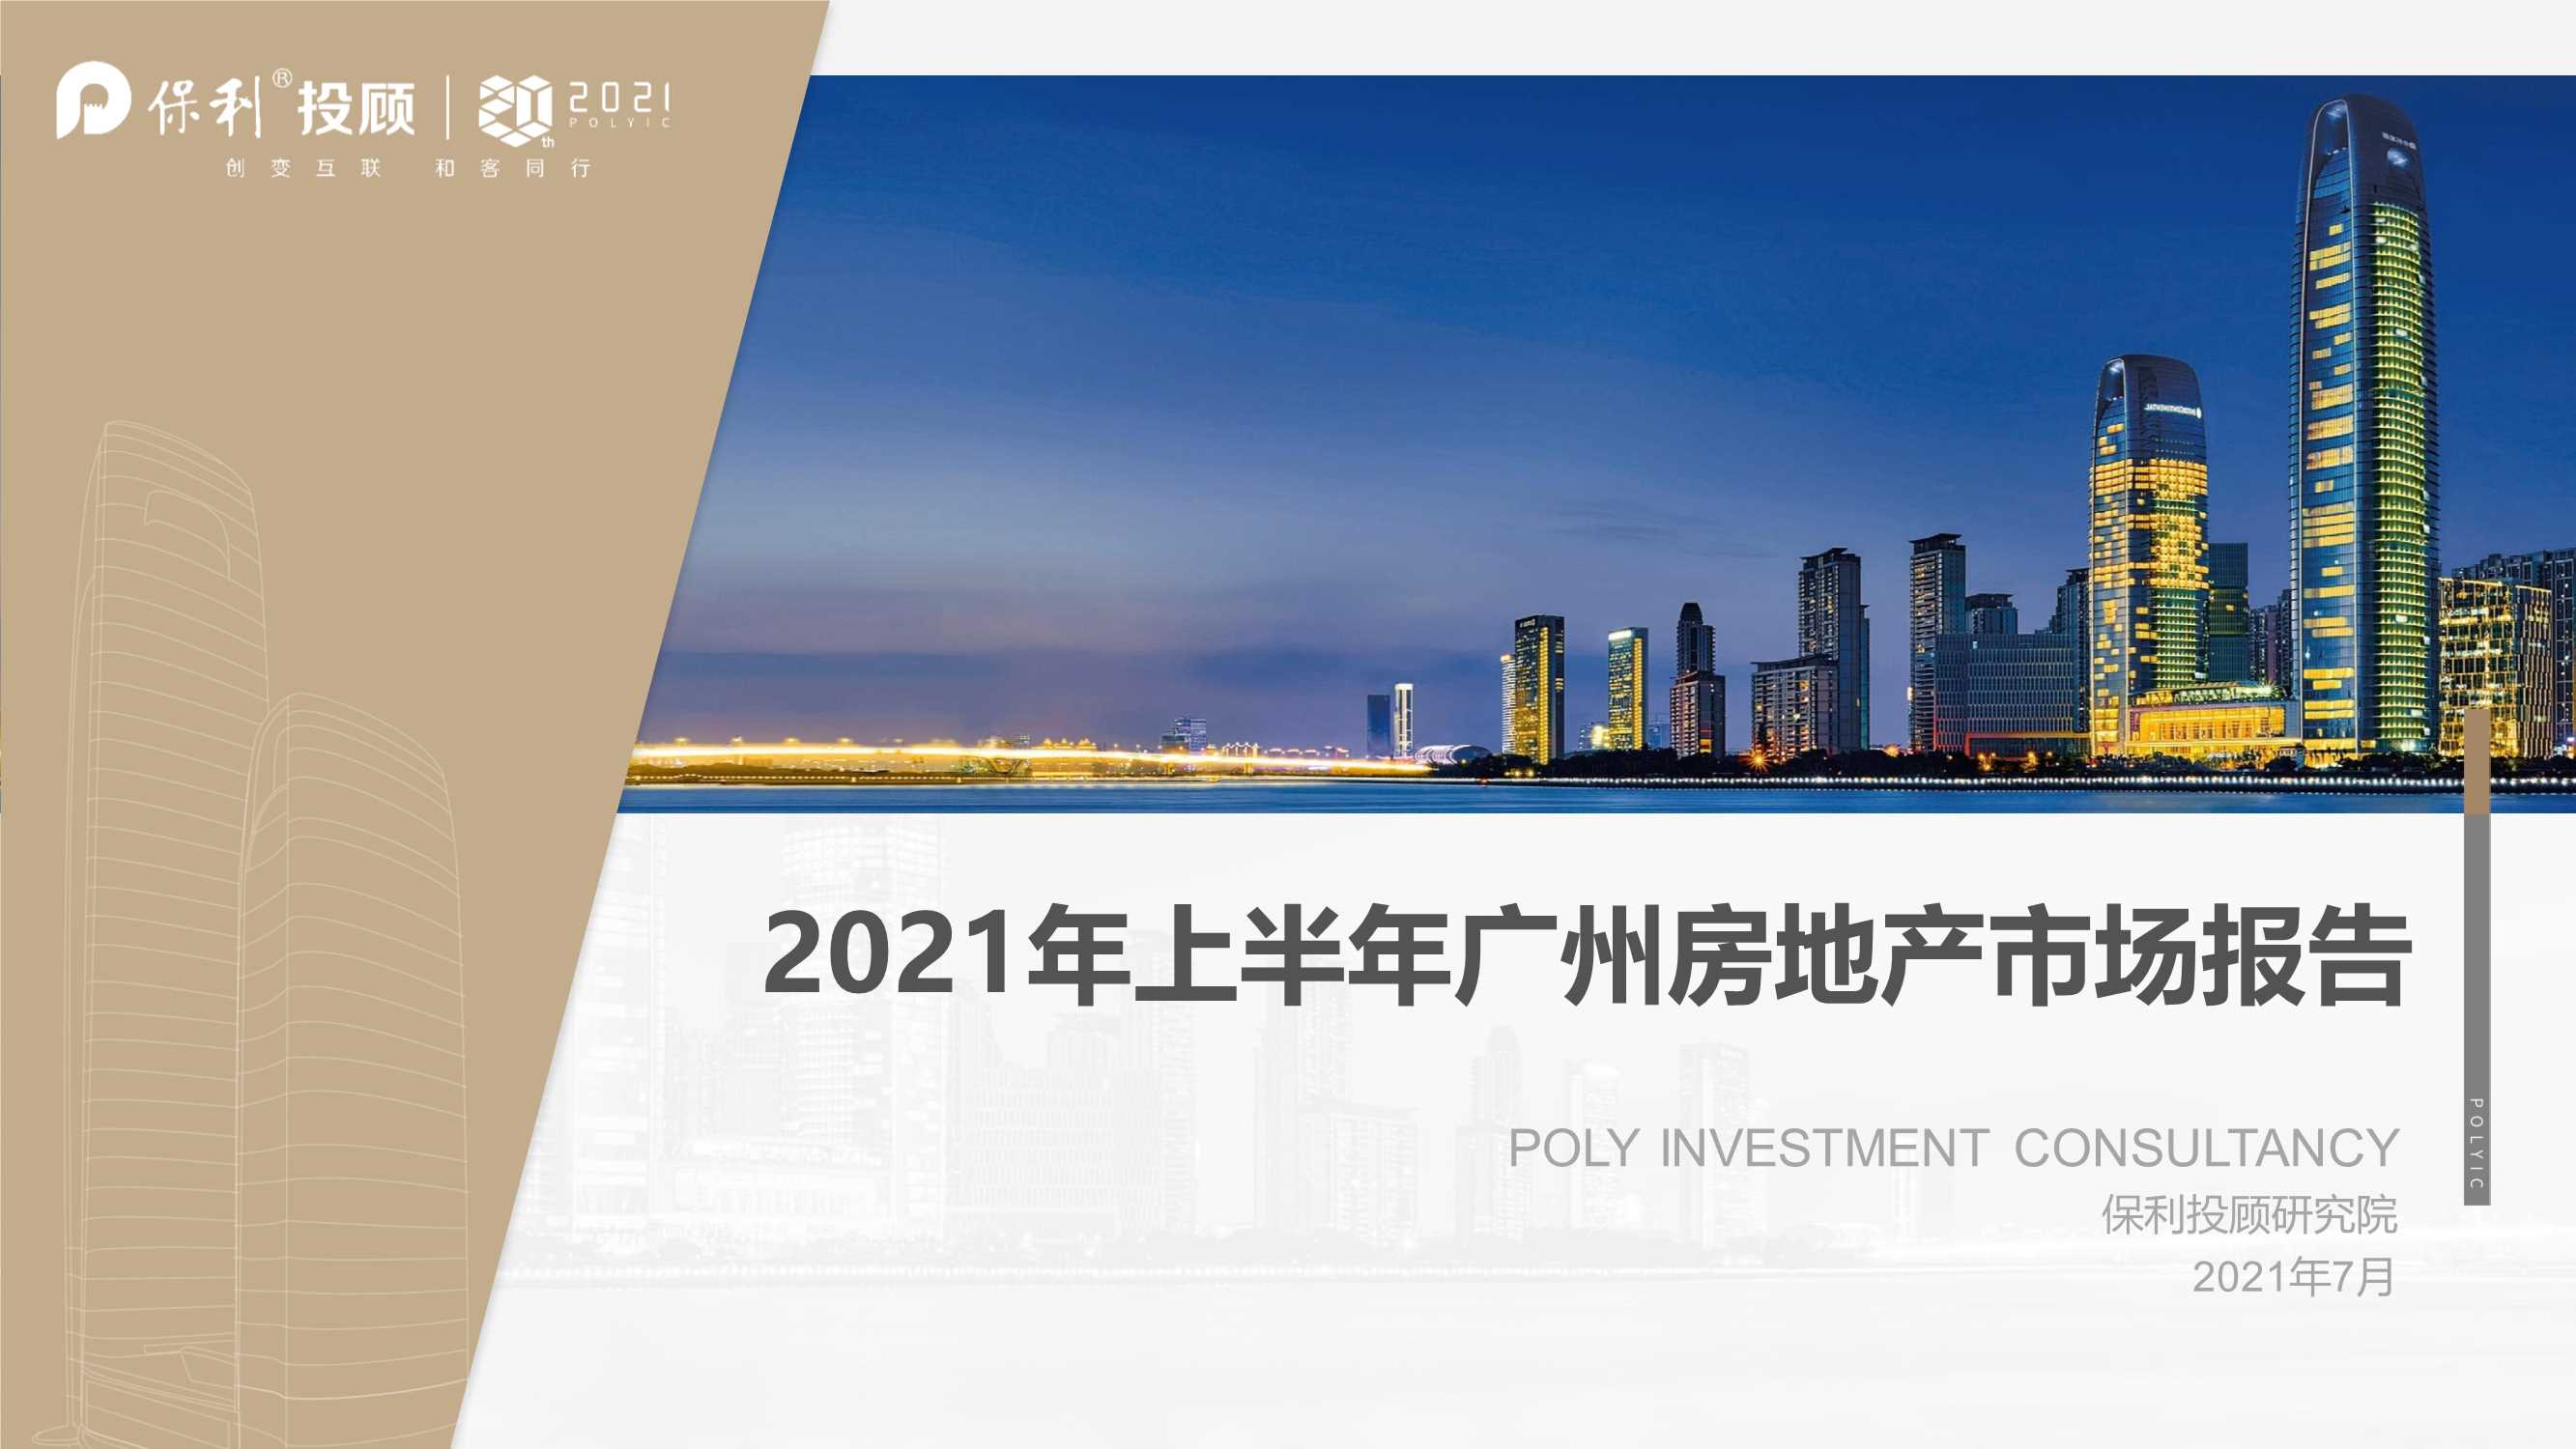 保利投顾研究院-2021年广州房地产市场半年报-2021.07-30页